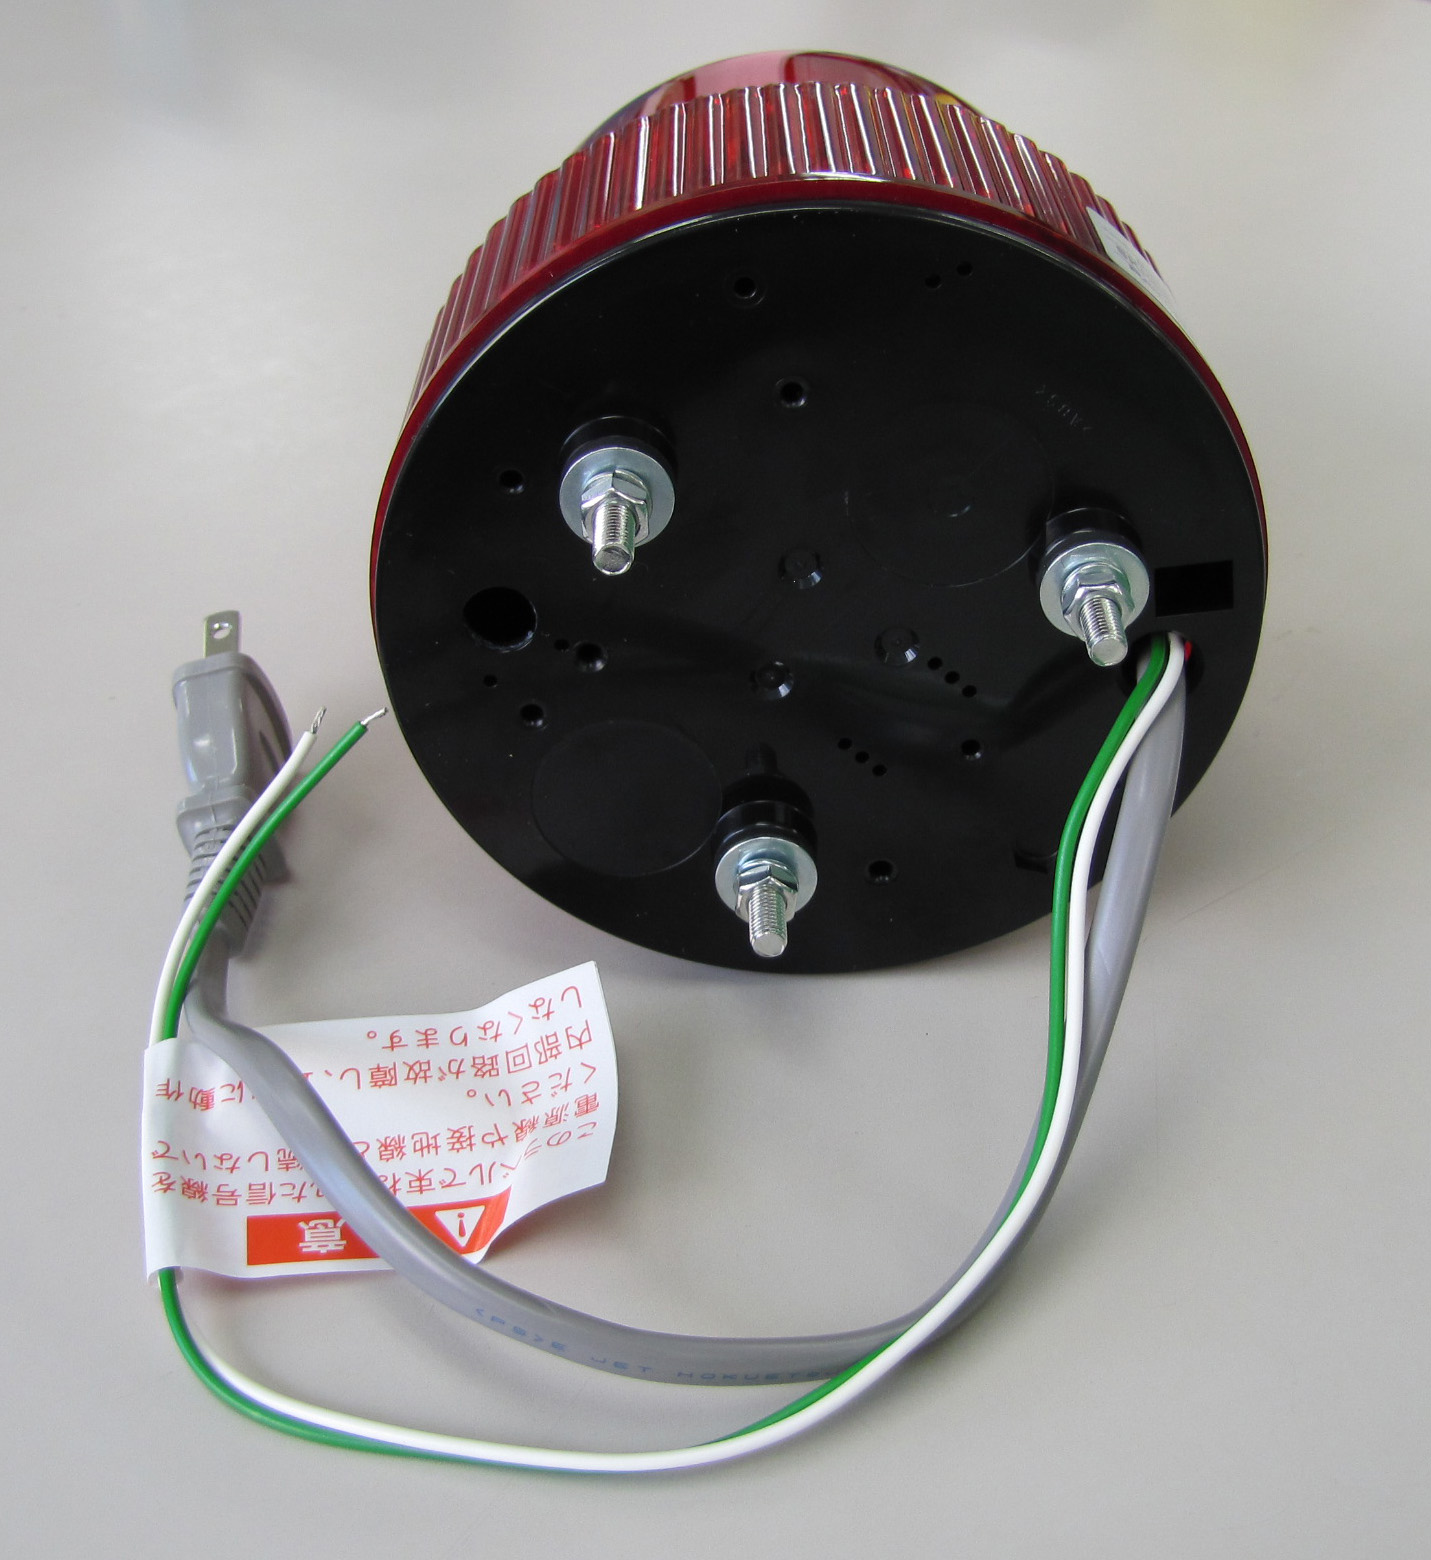 AC100V ＬＥＤ回転灯(ブザー付 黄色)のは照明器具です。 AC100V ＬＥＤ回転灯(ブザー付 黄色) - 3